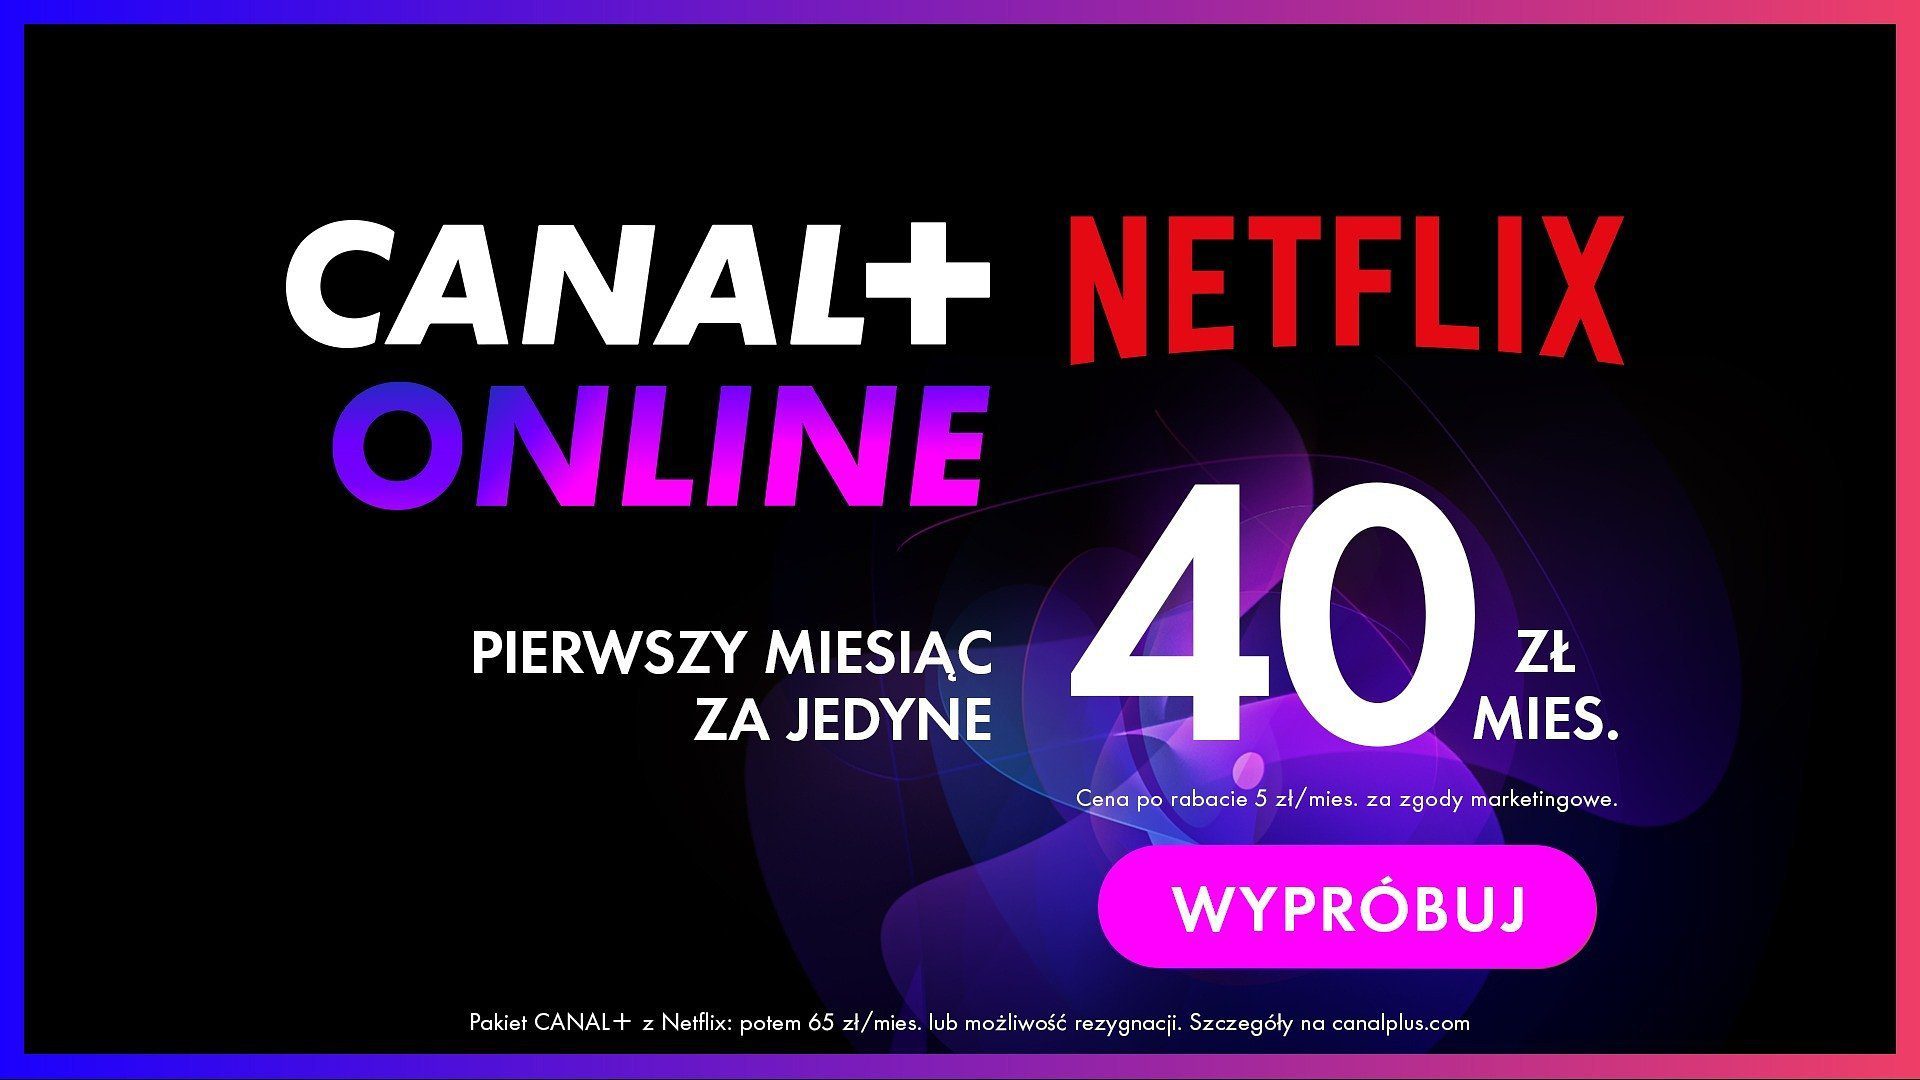 Das neue Angebot von Canal + Online und Netflix. Das erste seiner Art in Polen 117